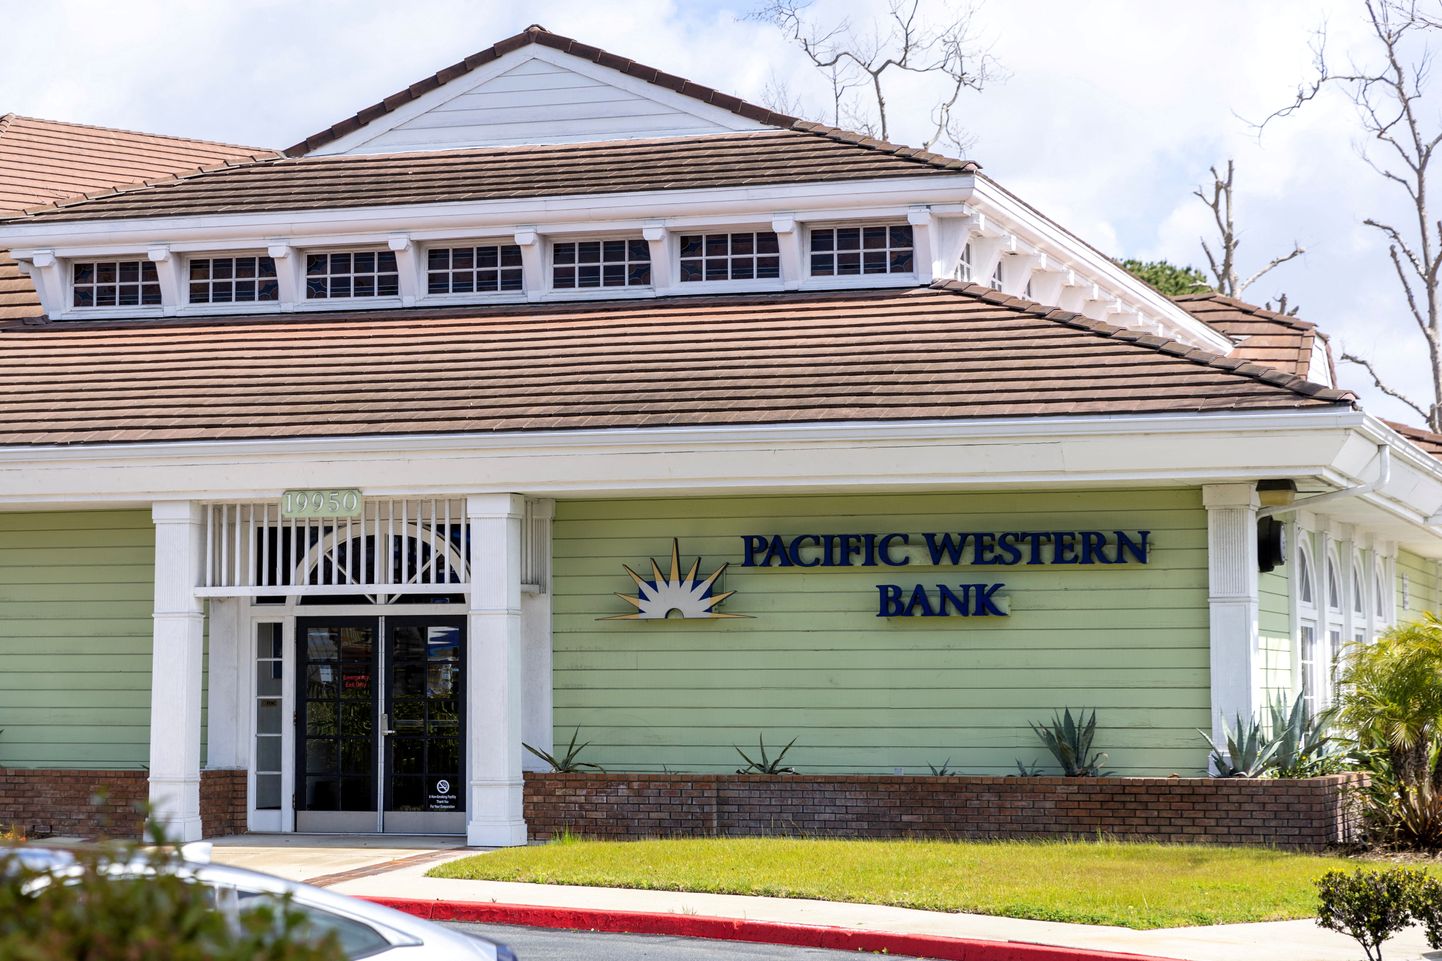 Pacific Western Banki aktsia on tugeva müügisurve all